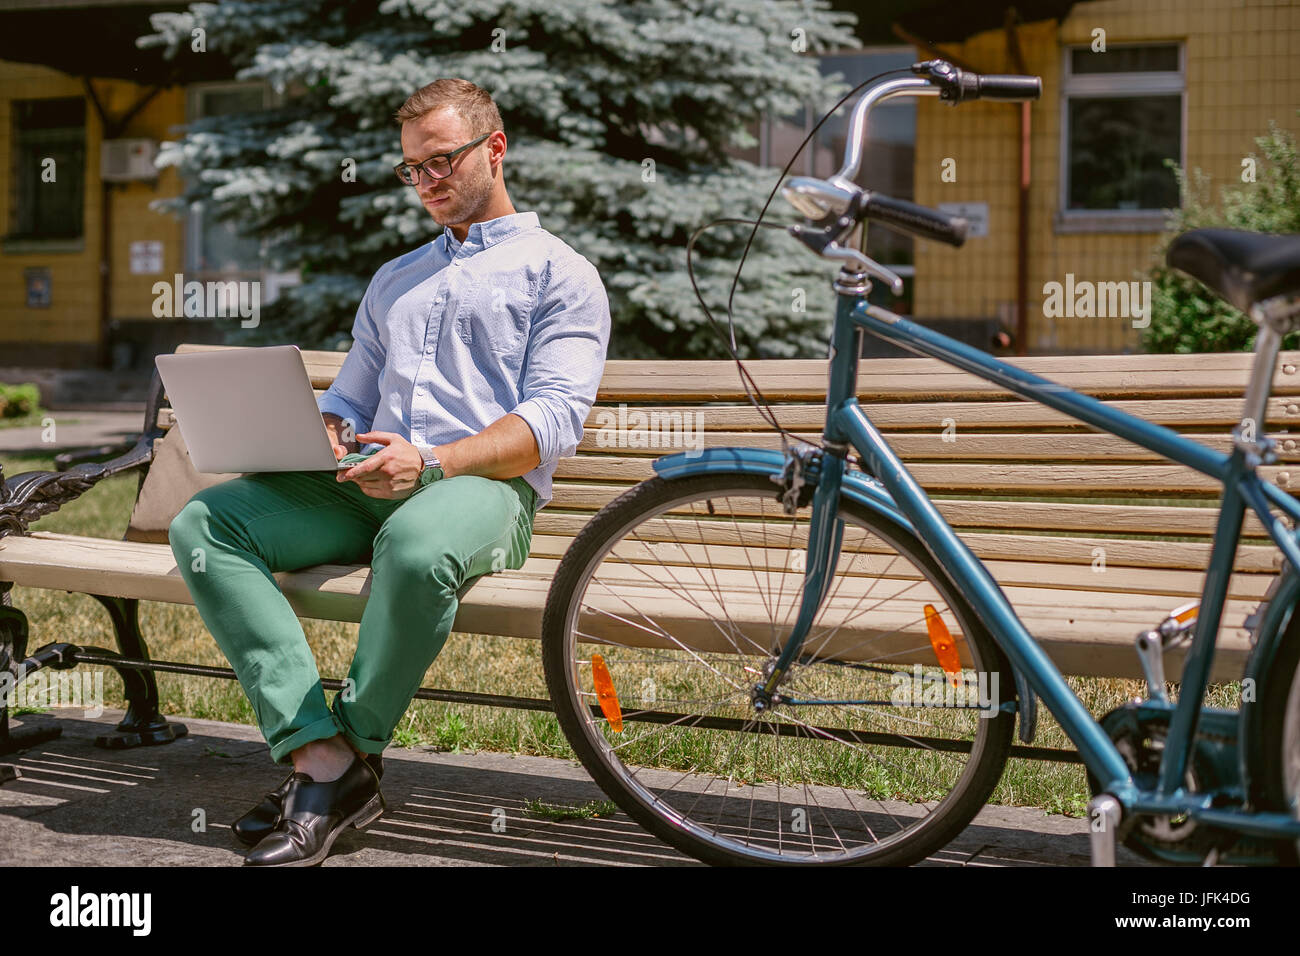 Lässige Geschäftsmann arbeiten mit Laptop auf eine Kaffeepause konzentriert. Er ist auf einer Bank sitzen und arbeiten am Laptop, neben der Bank liegt ein Fahrrad. Stockfoto